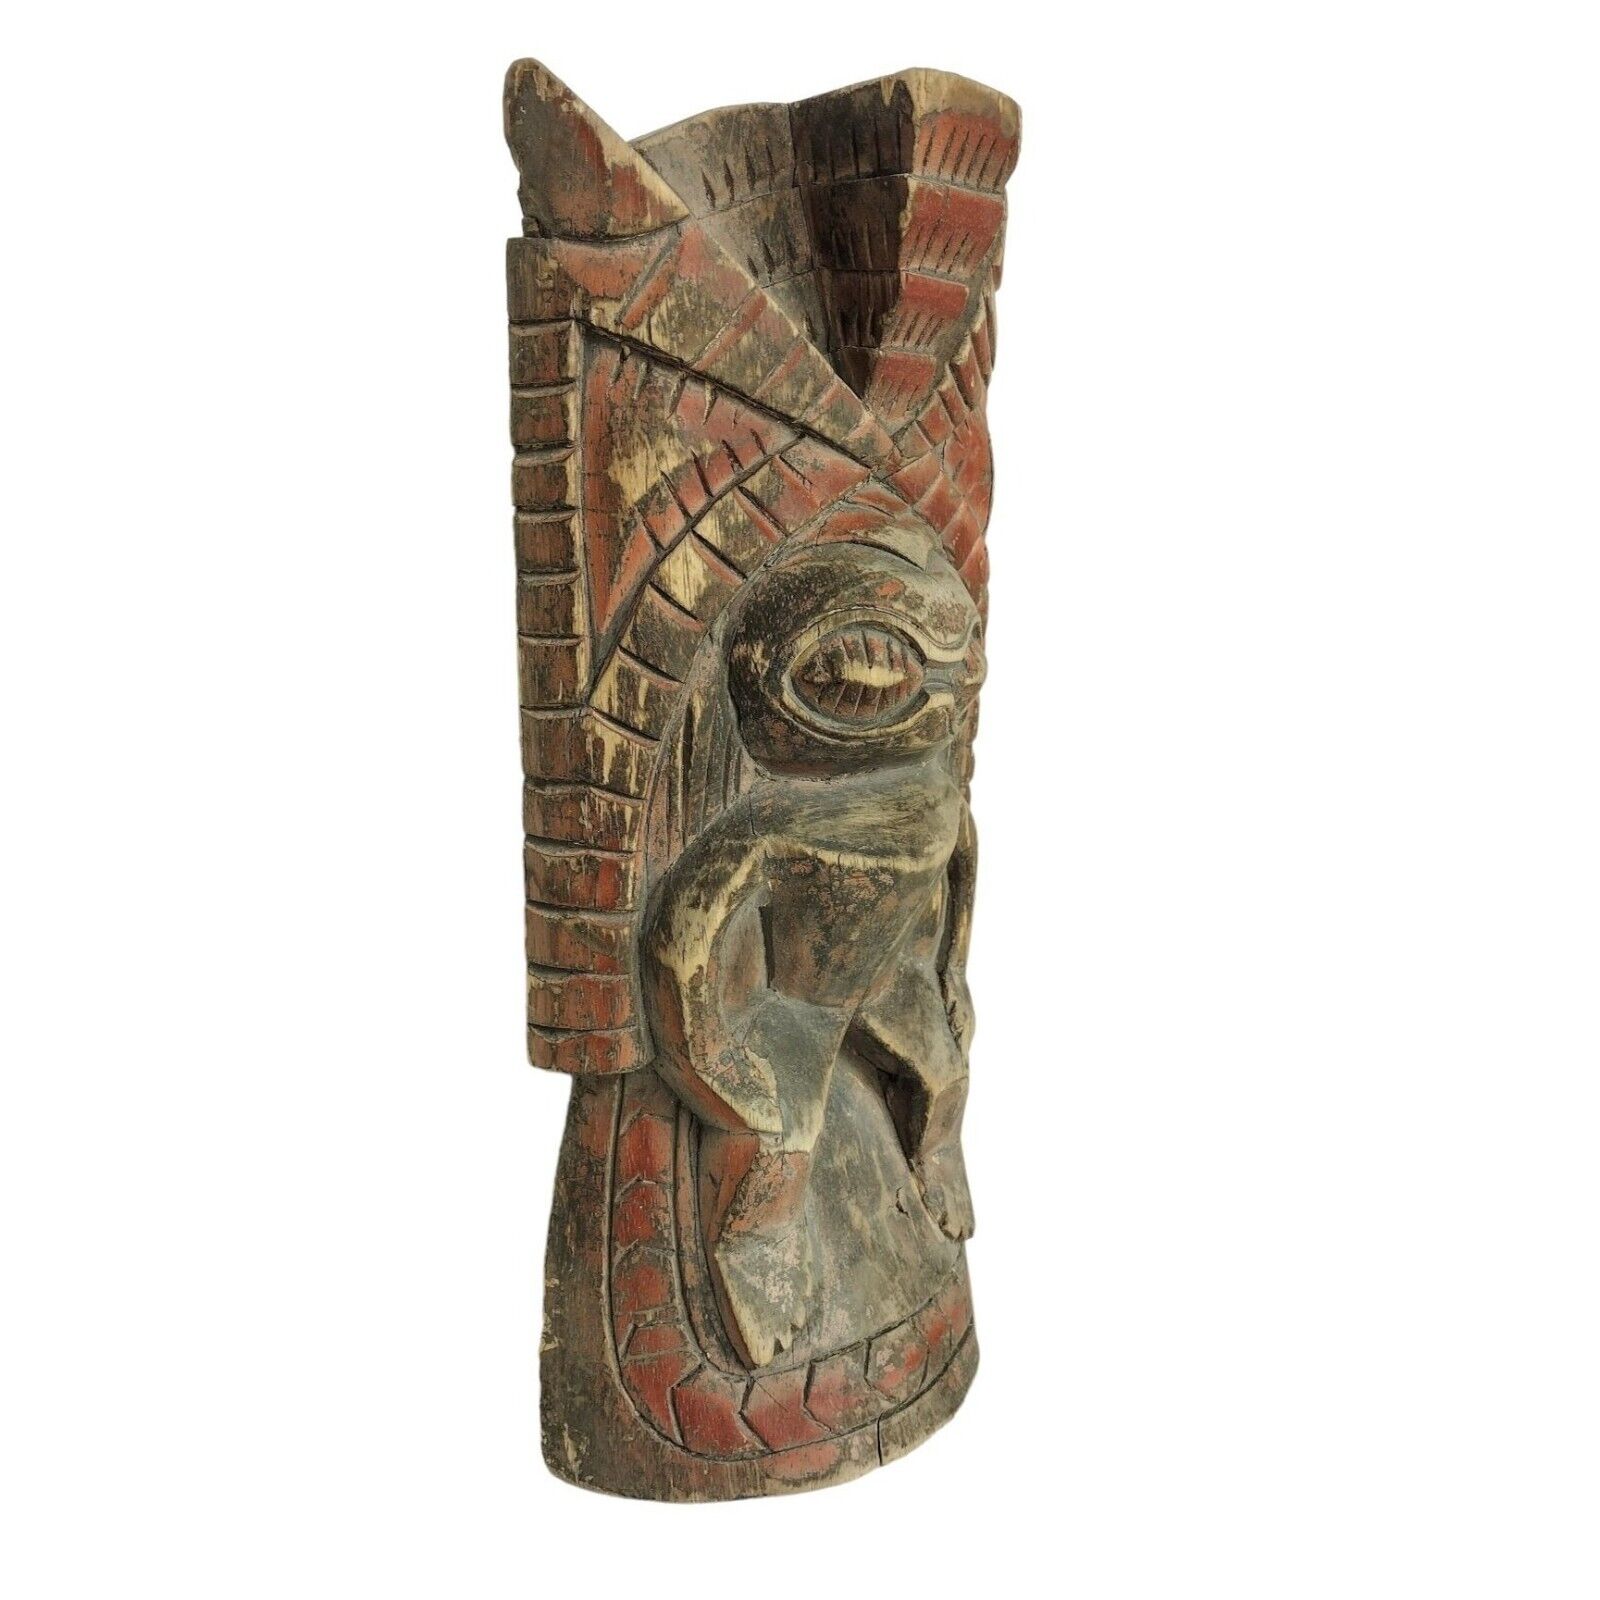 Handcrafted Primitive Native Tribal Tiki Vintage Warrior Mask Statue